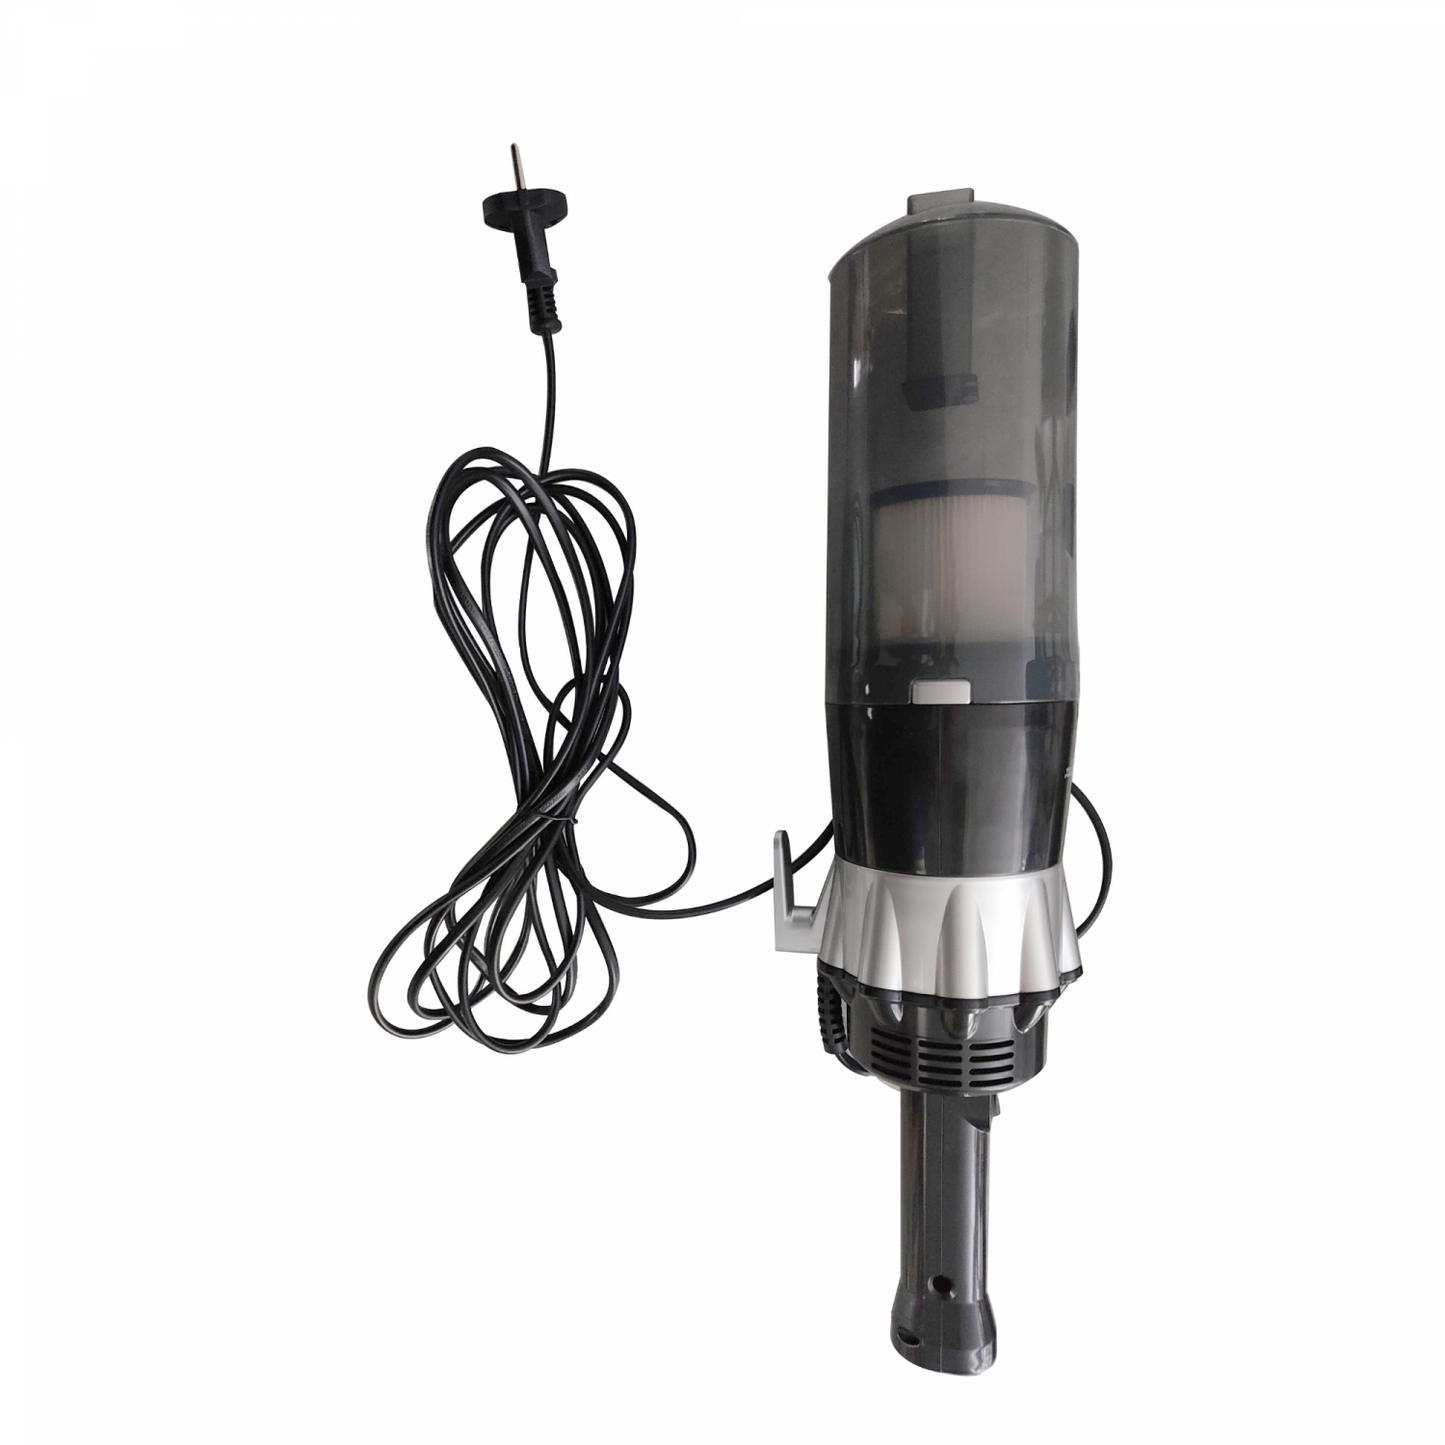 Just Perfecto JL-16: 600W 3-in-1 Stick Vacuum Cleaner - Black